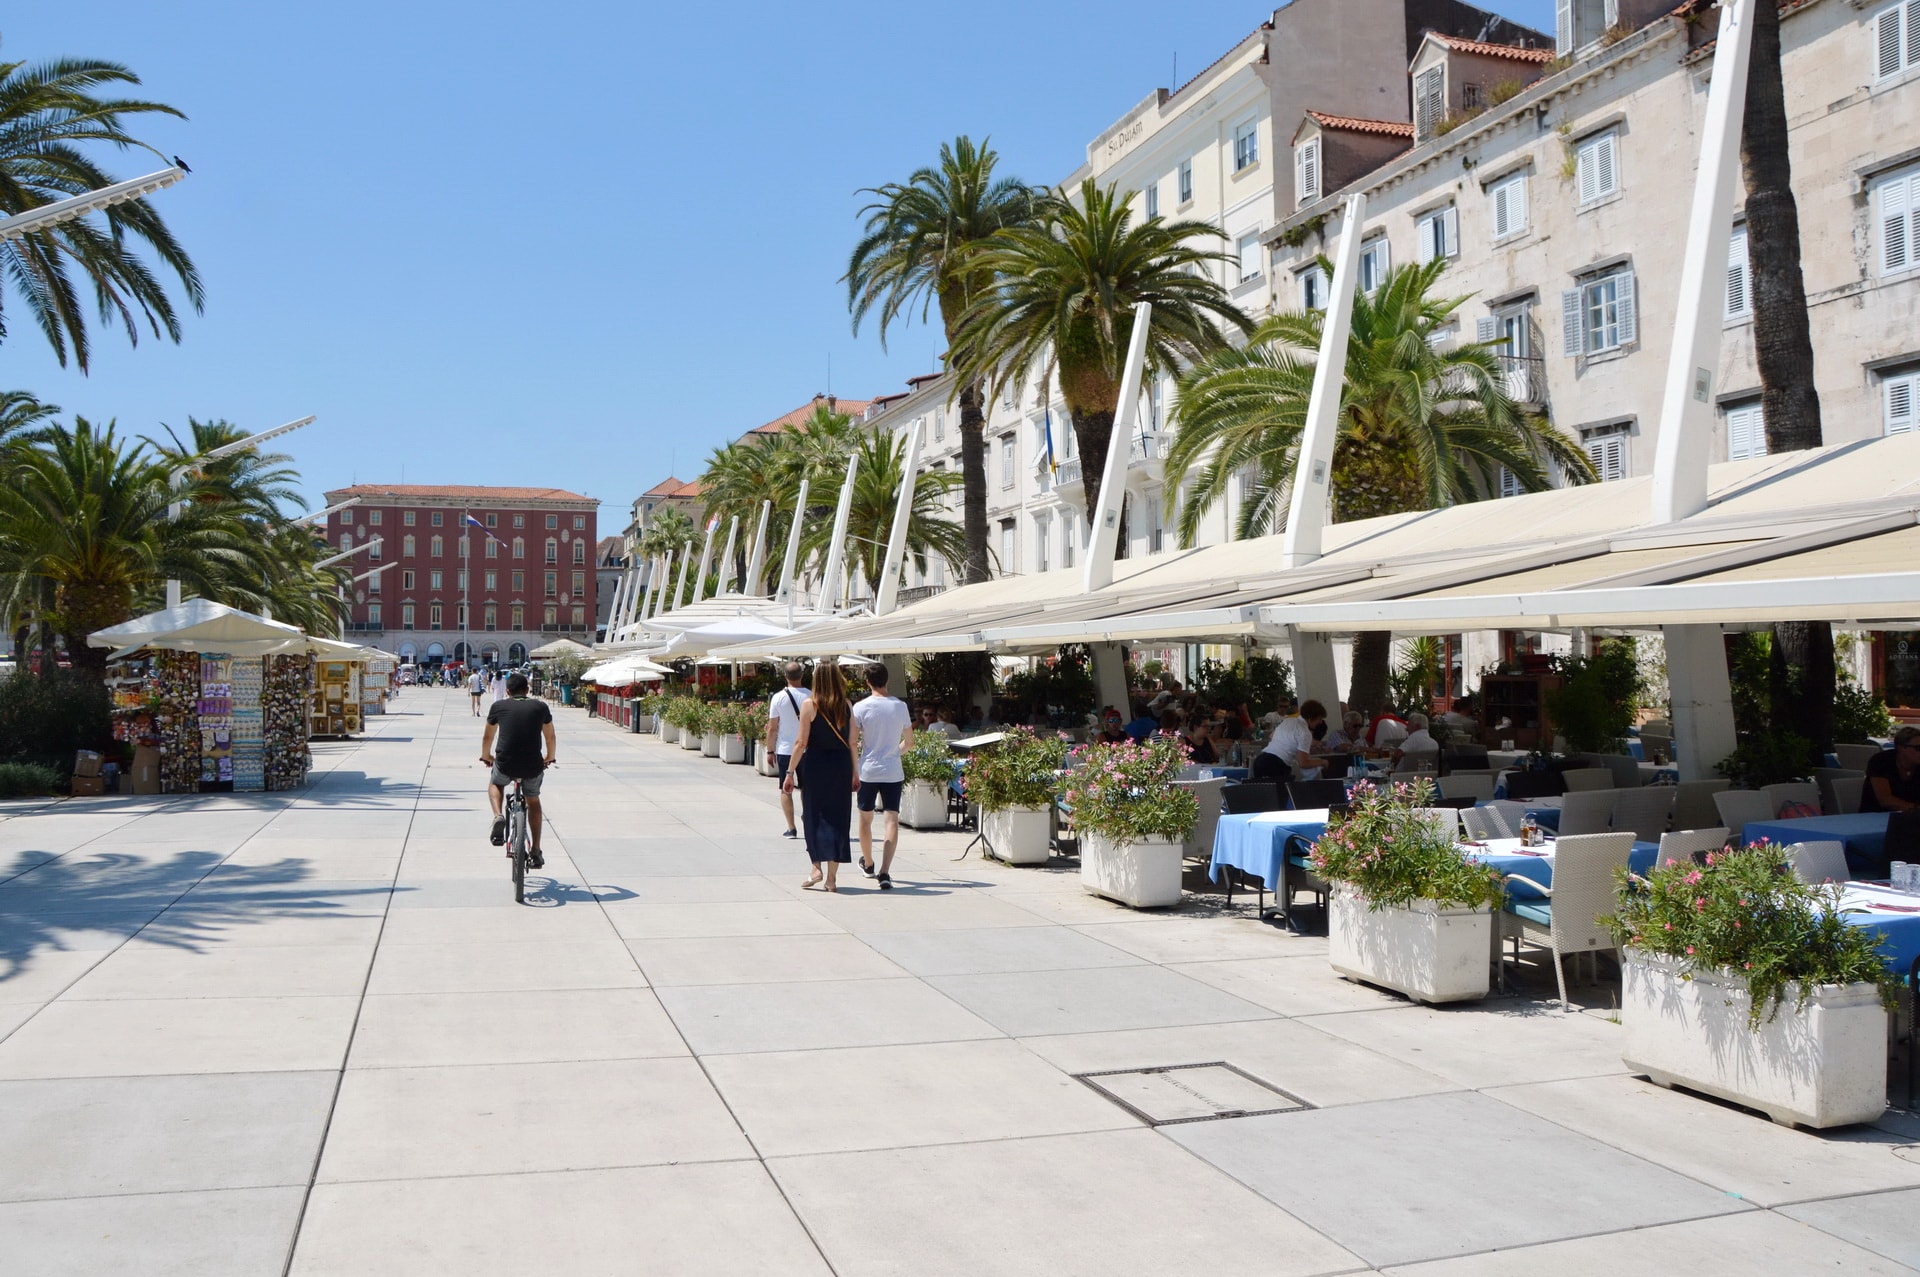 Riva Promenade in Split